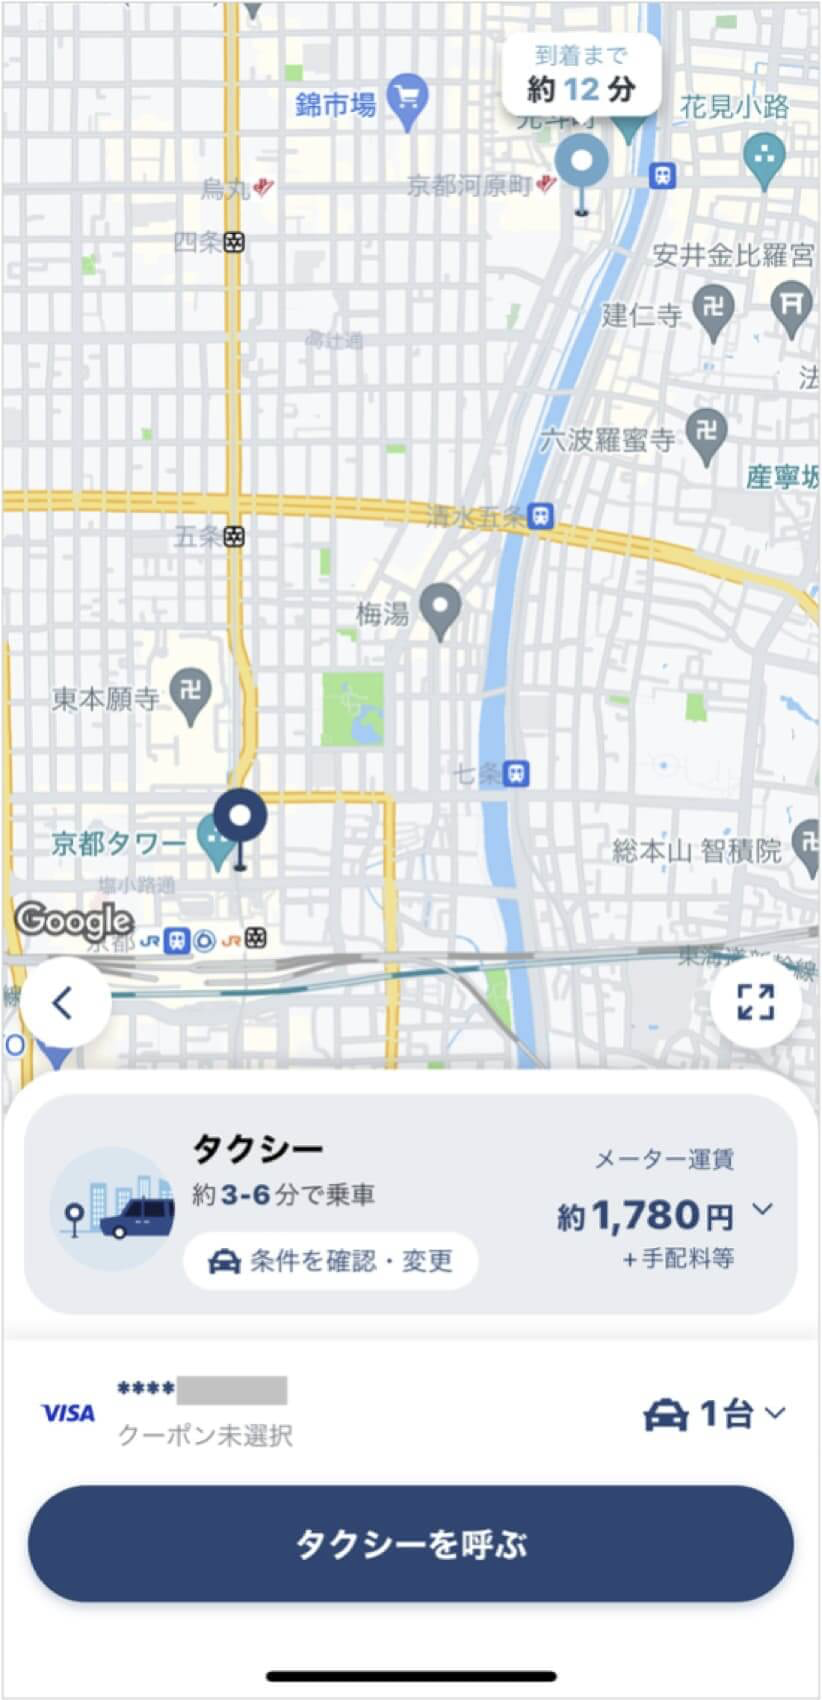 京都駅から四条河原町までのタクシー料金・所要時間まとめ